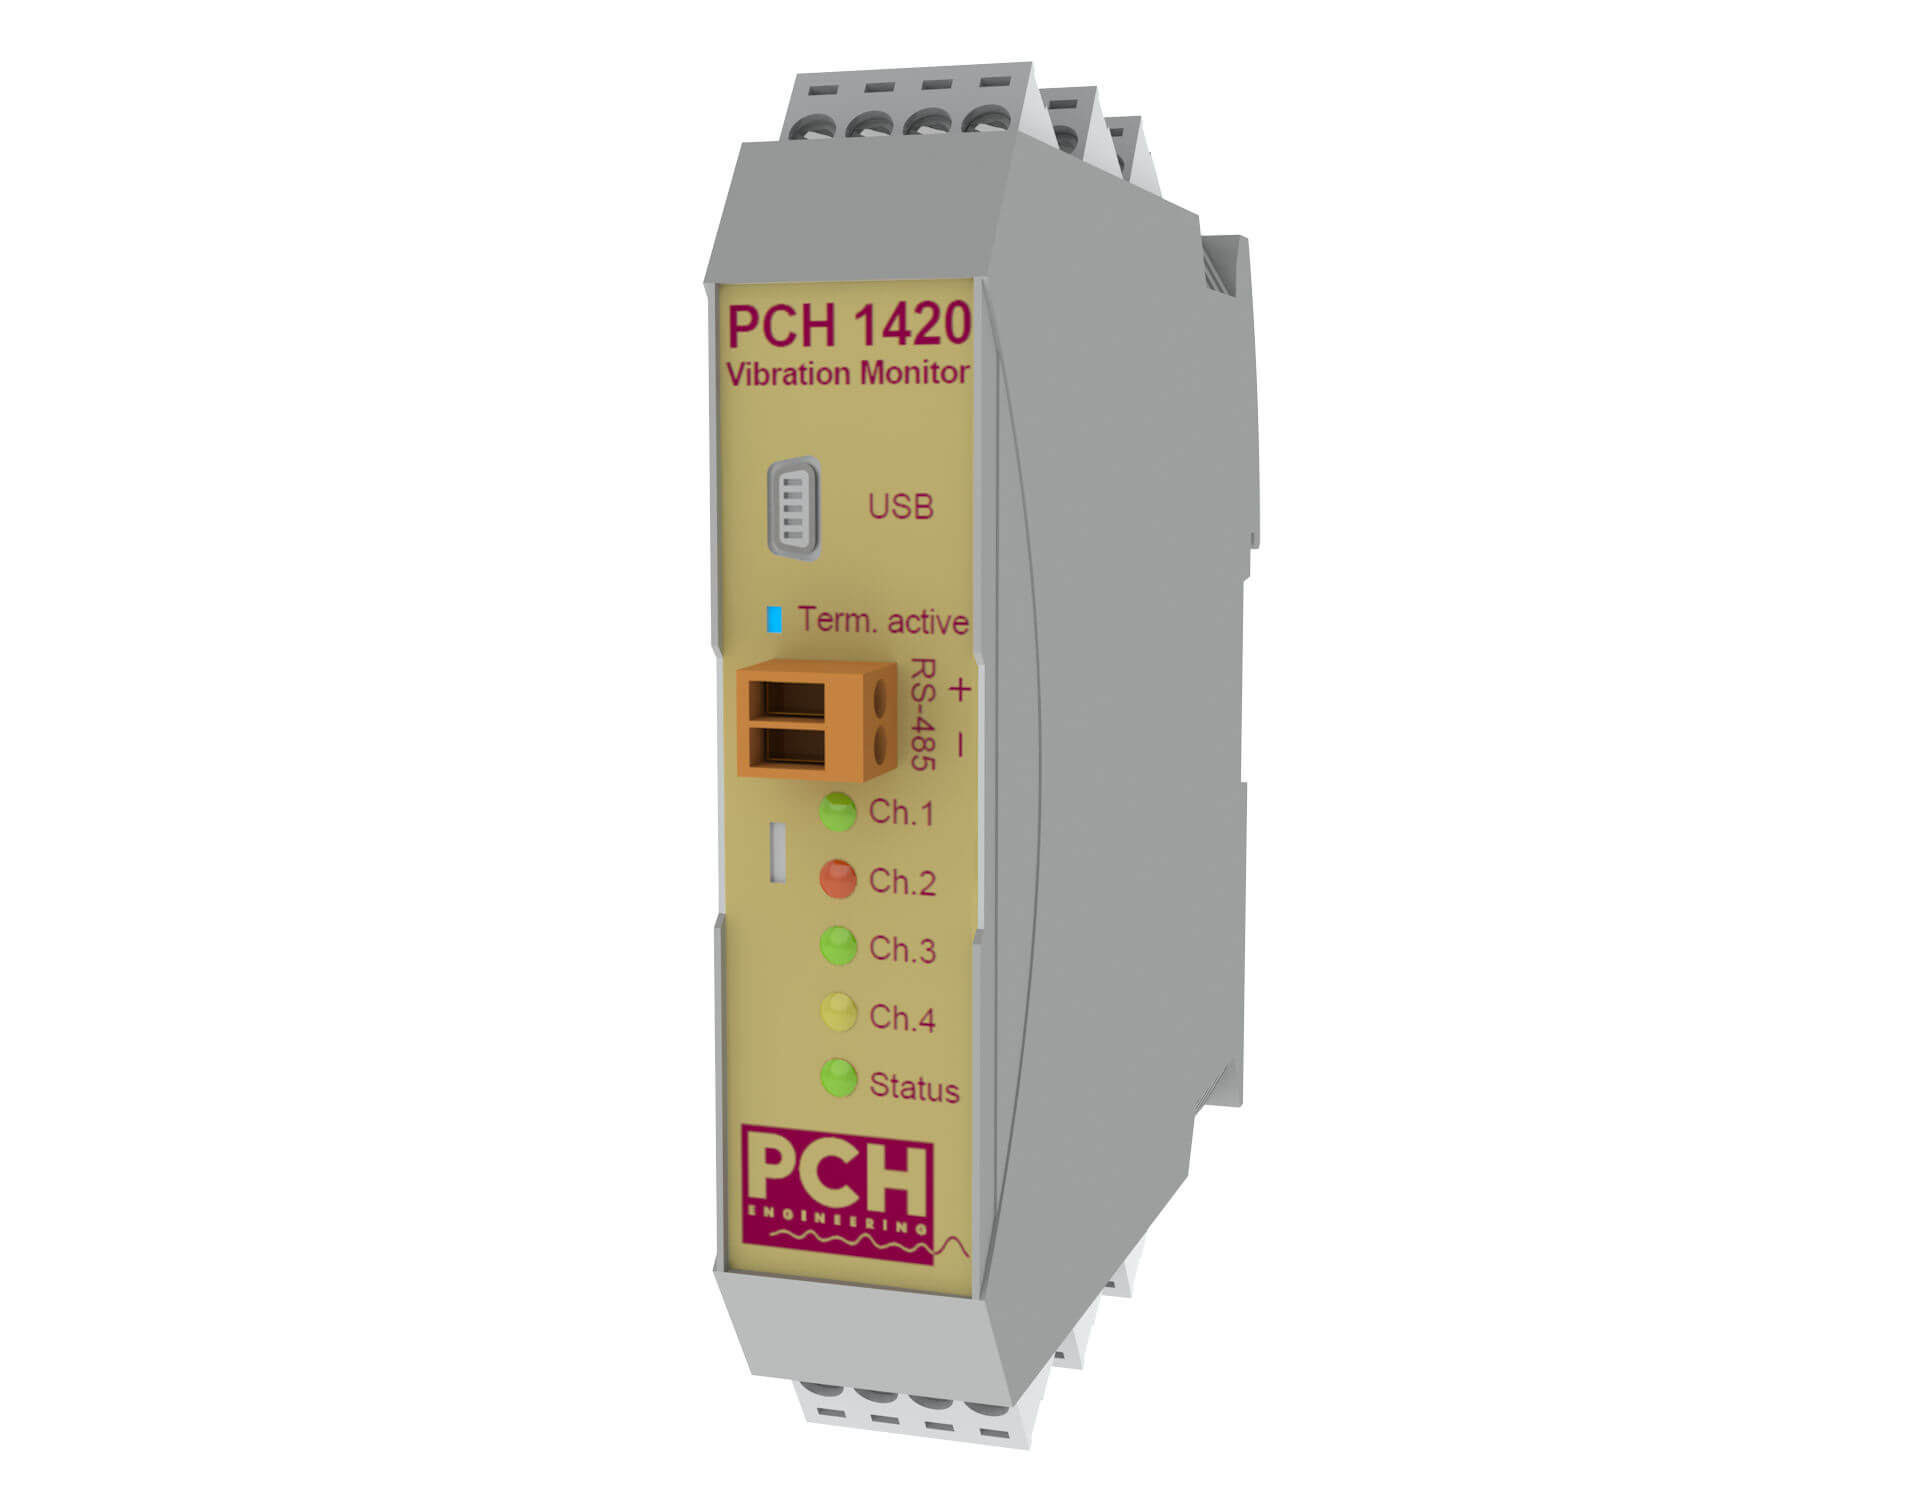 PCH 1420